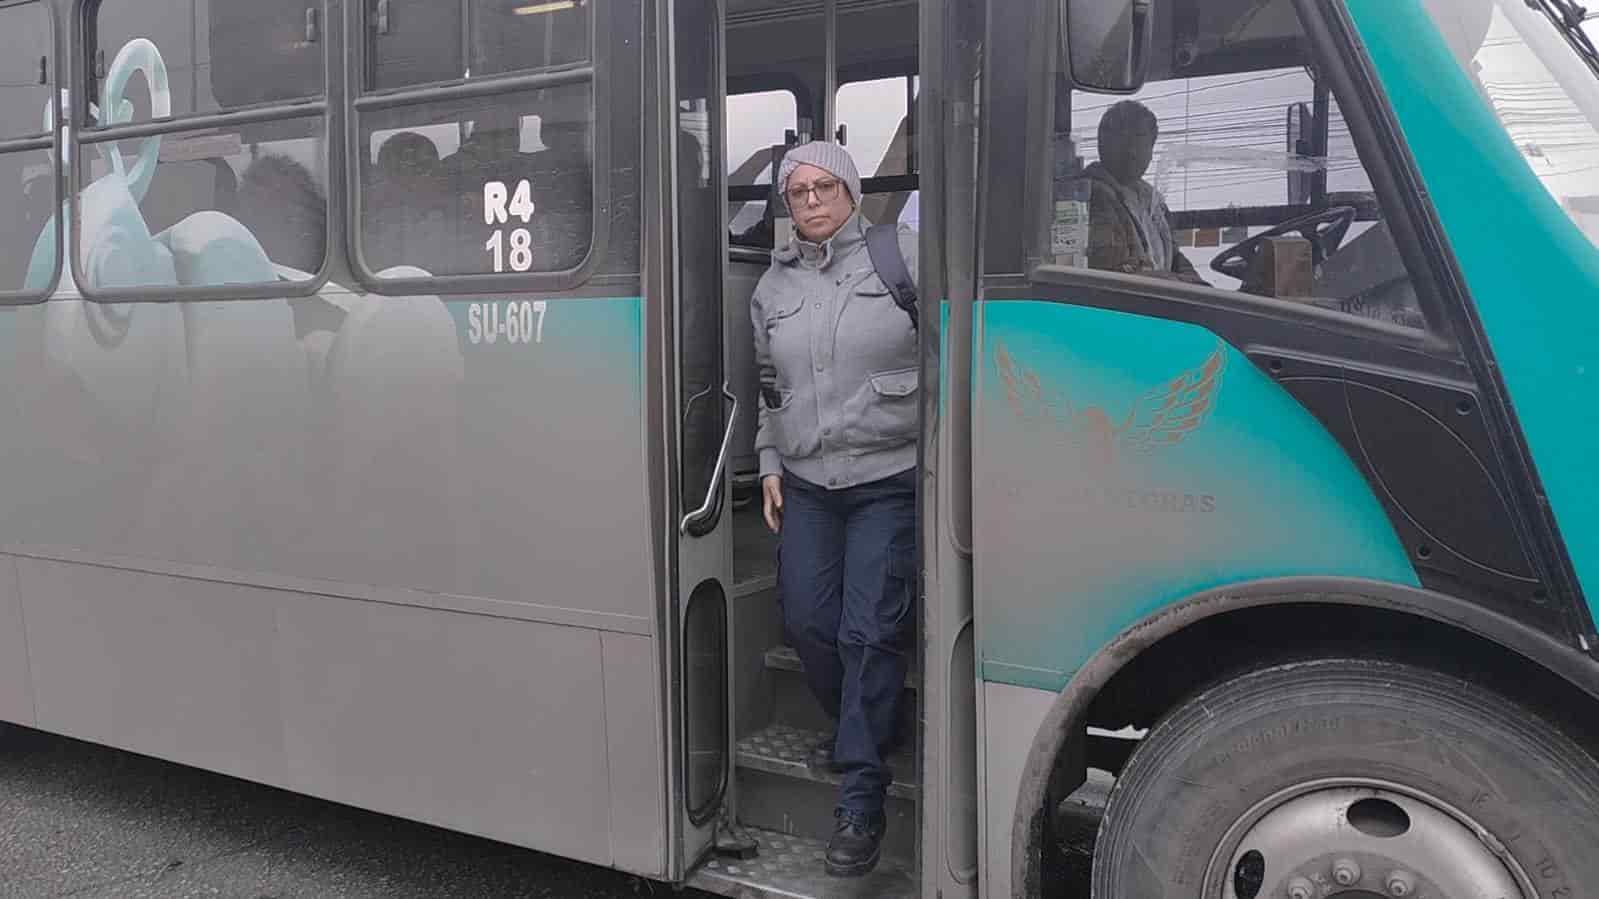 ¡Aumenta tarifa a $16 pesos! De mal en peor el transporte público